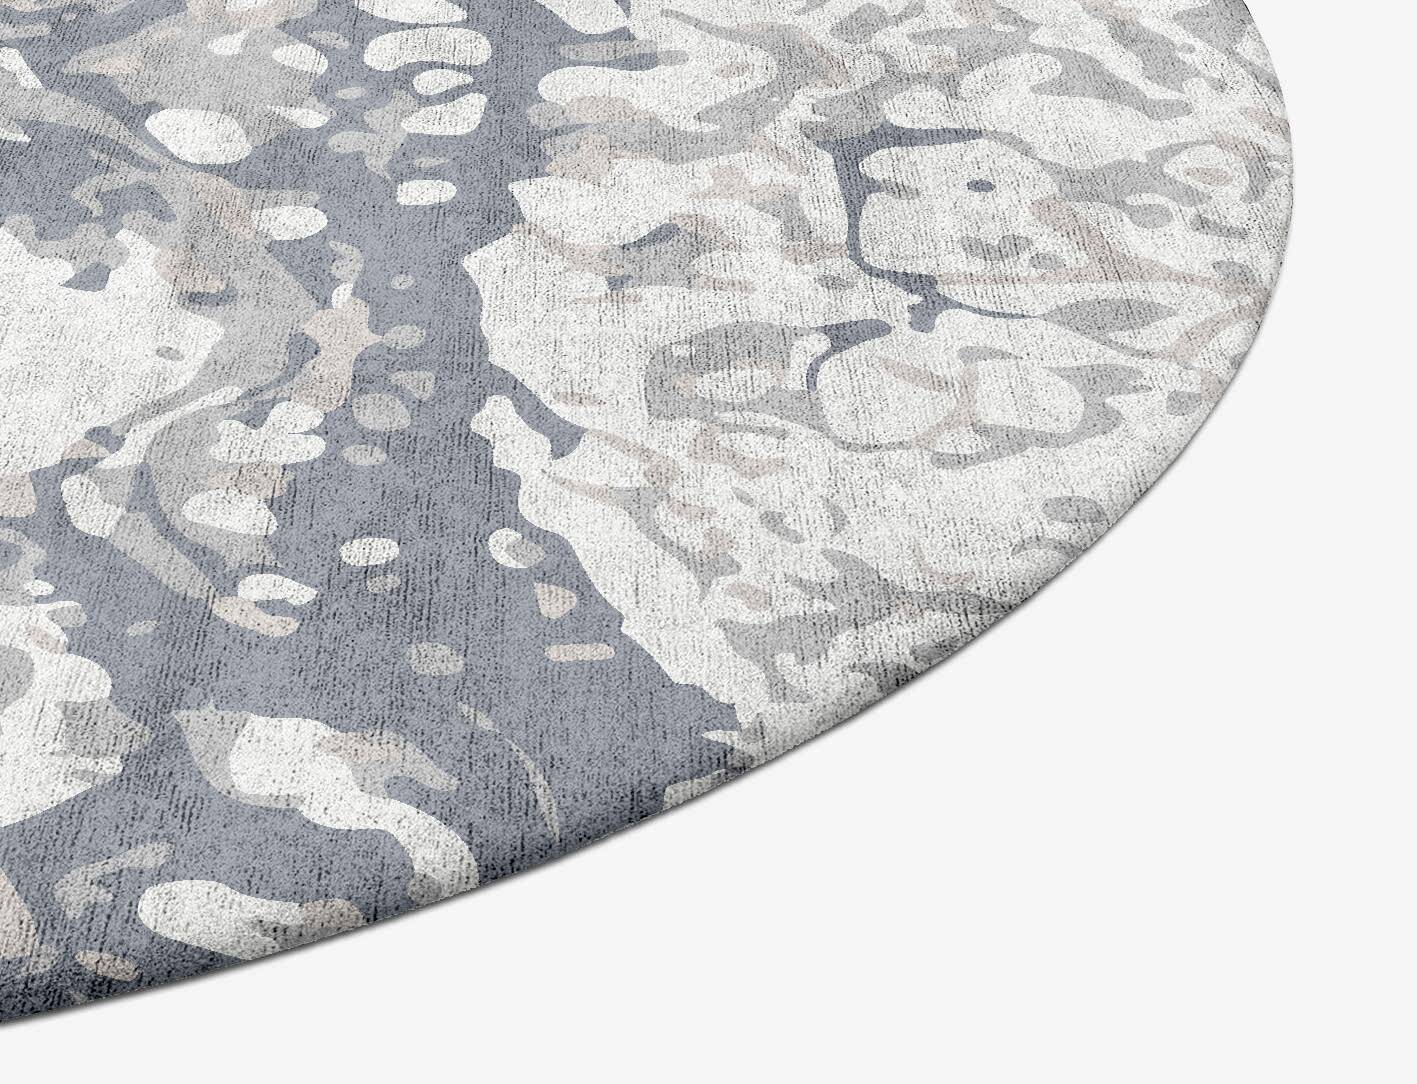 Chaos Surface Art Oval Hand Tufted Bamboo Silk Custom Rug by Rug Artisan